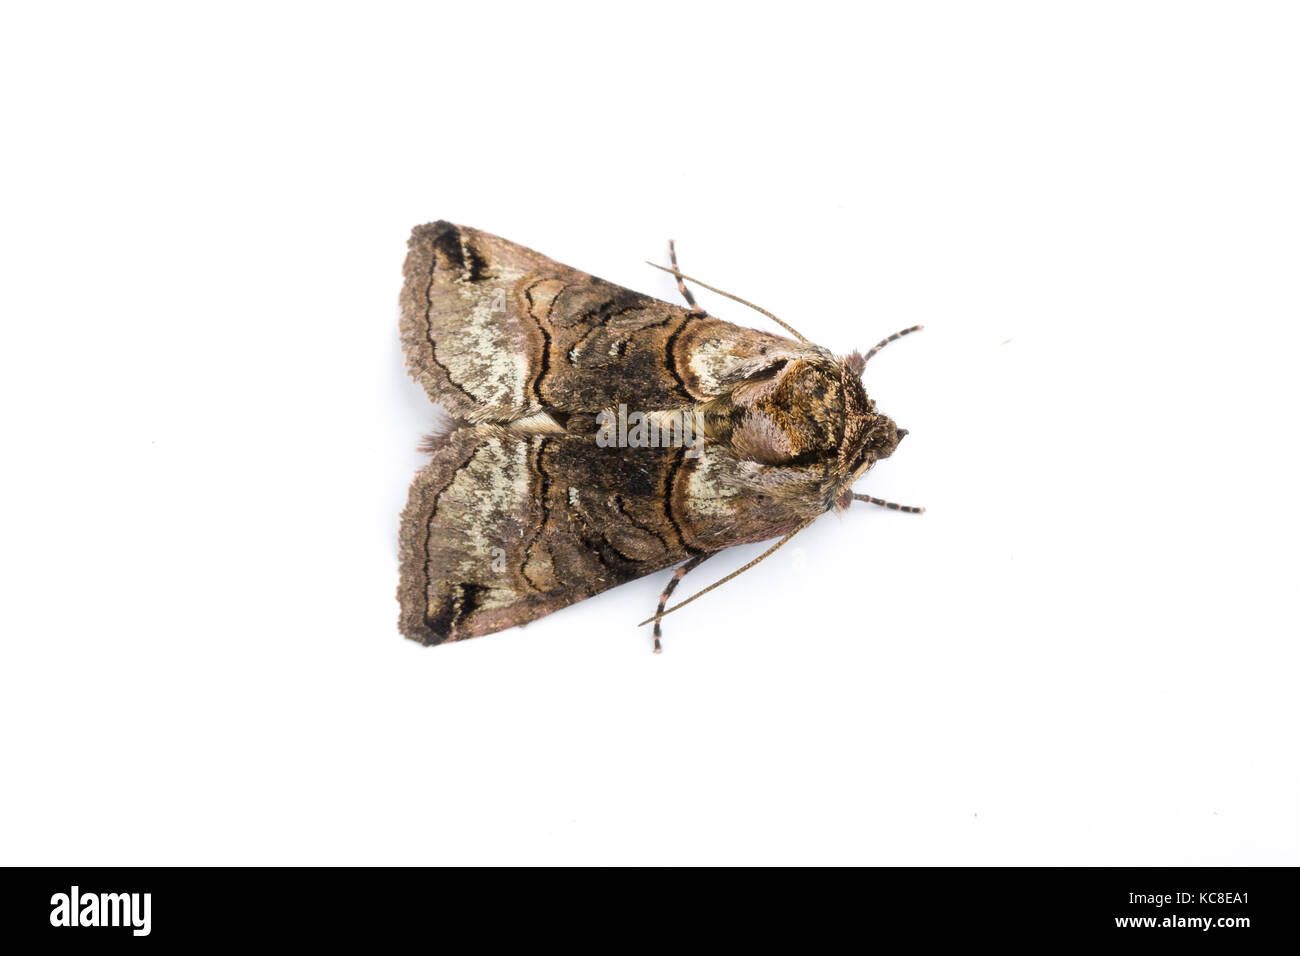 Spectacle moth, Abrostola tripartita, Monmouthshire, April.  Family Noctuidae. Focus-stacked image on white background Stock Photo